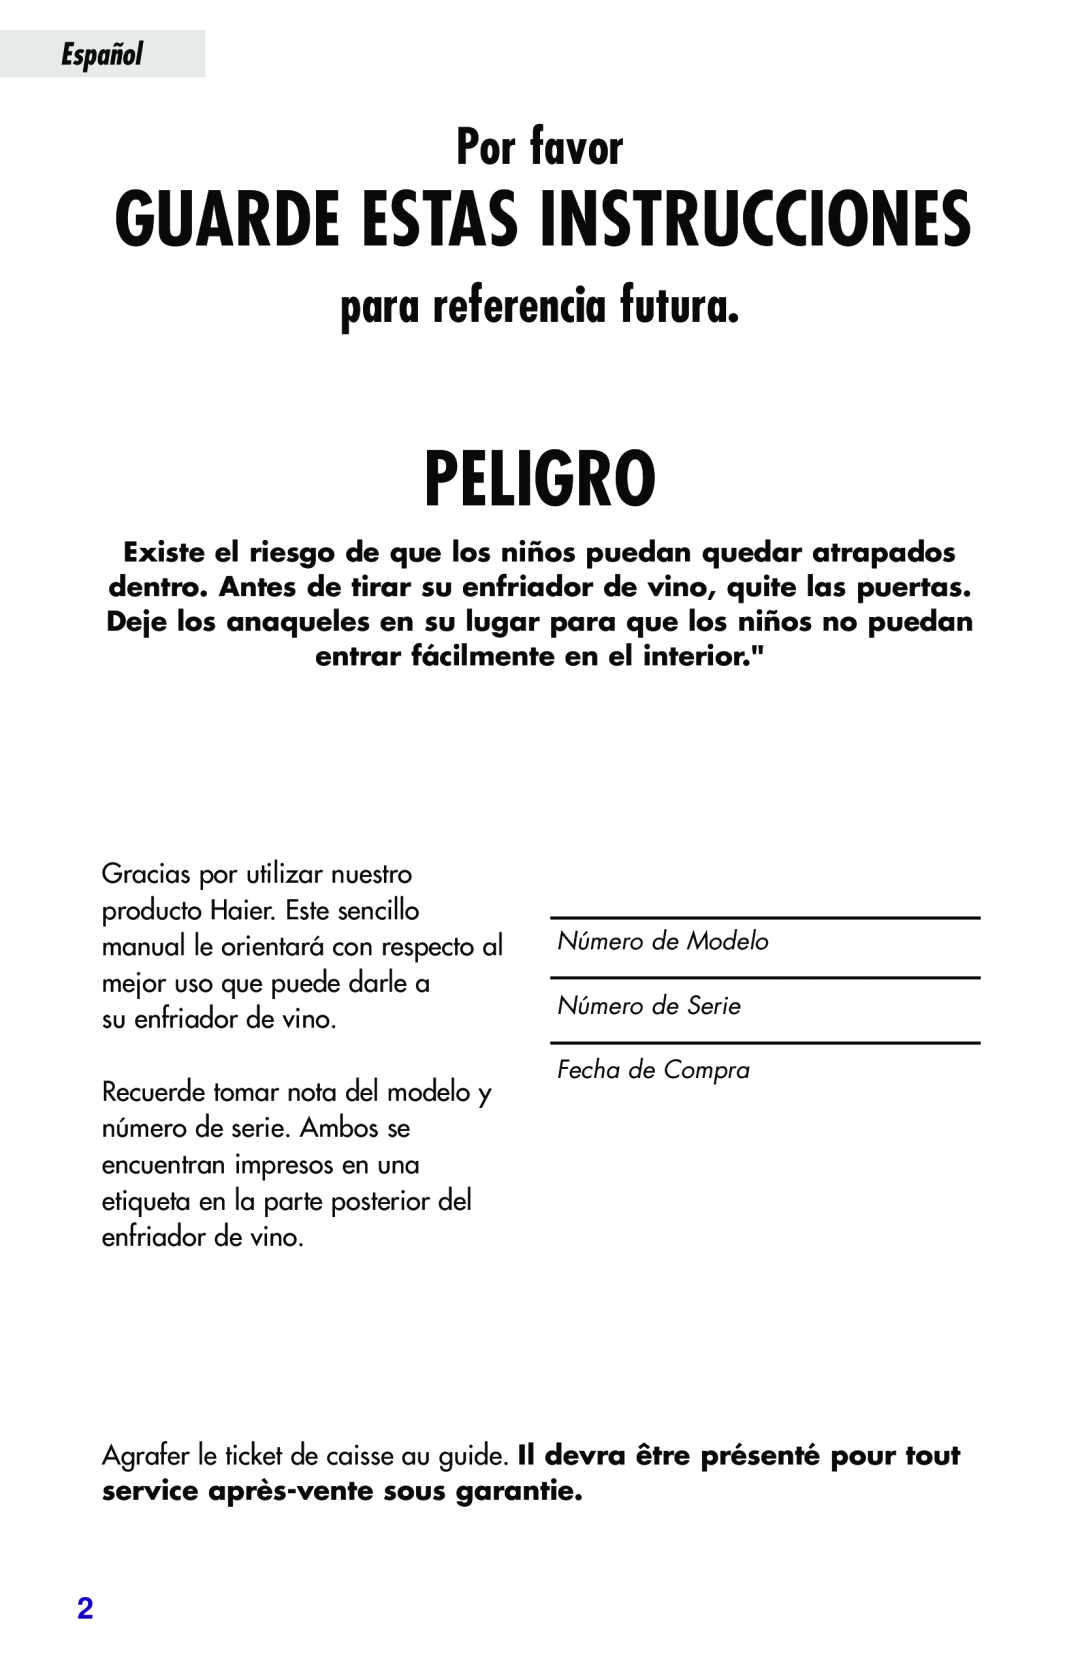 Haier JC-82GB manual Peligro, Guarde Estas Instrucciones, Por favor, para referencia futura, Español 